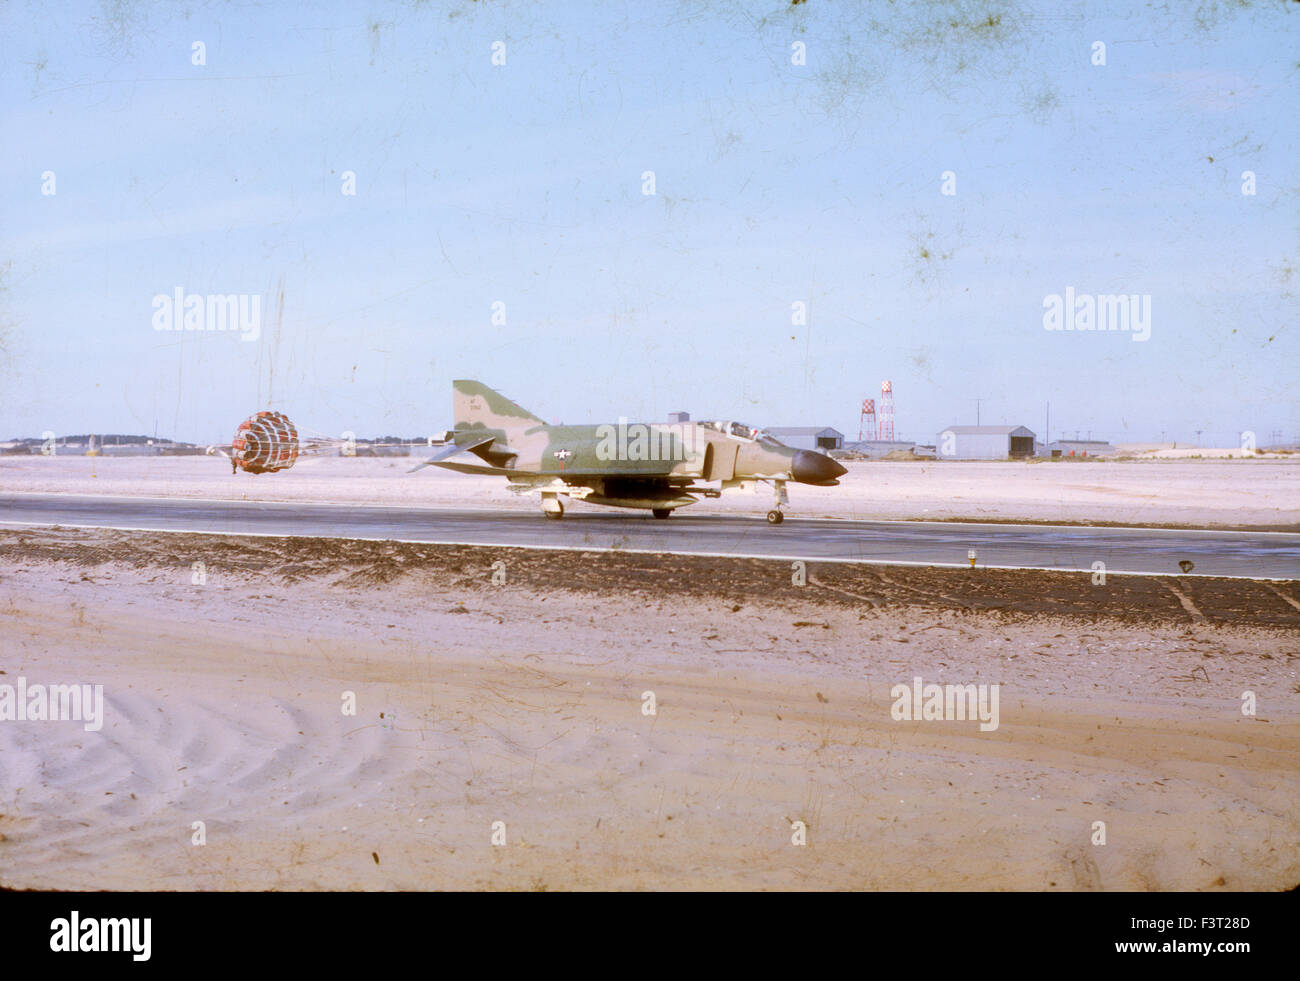 Eine f-4 Phantom Kampfjet landet auf der Landebahn auf Cam Rahn Luftwaffenstützpunkt während des Vietnam-Krieges. Die Basis wurde von der United States Navy gebaut. Stockfoto